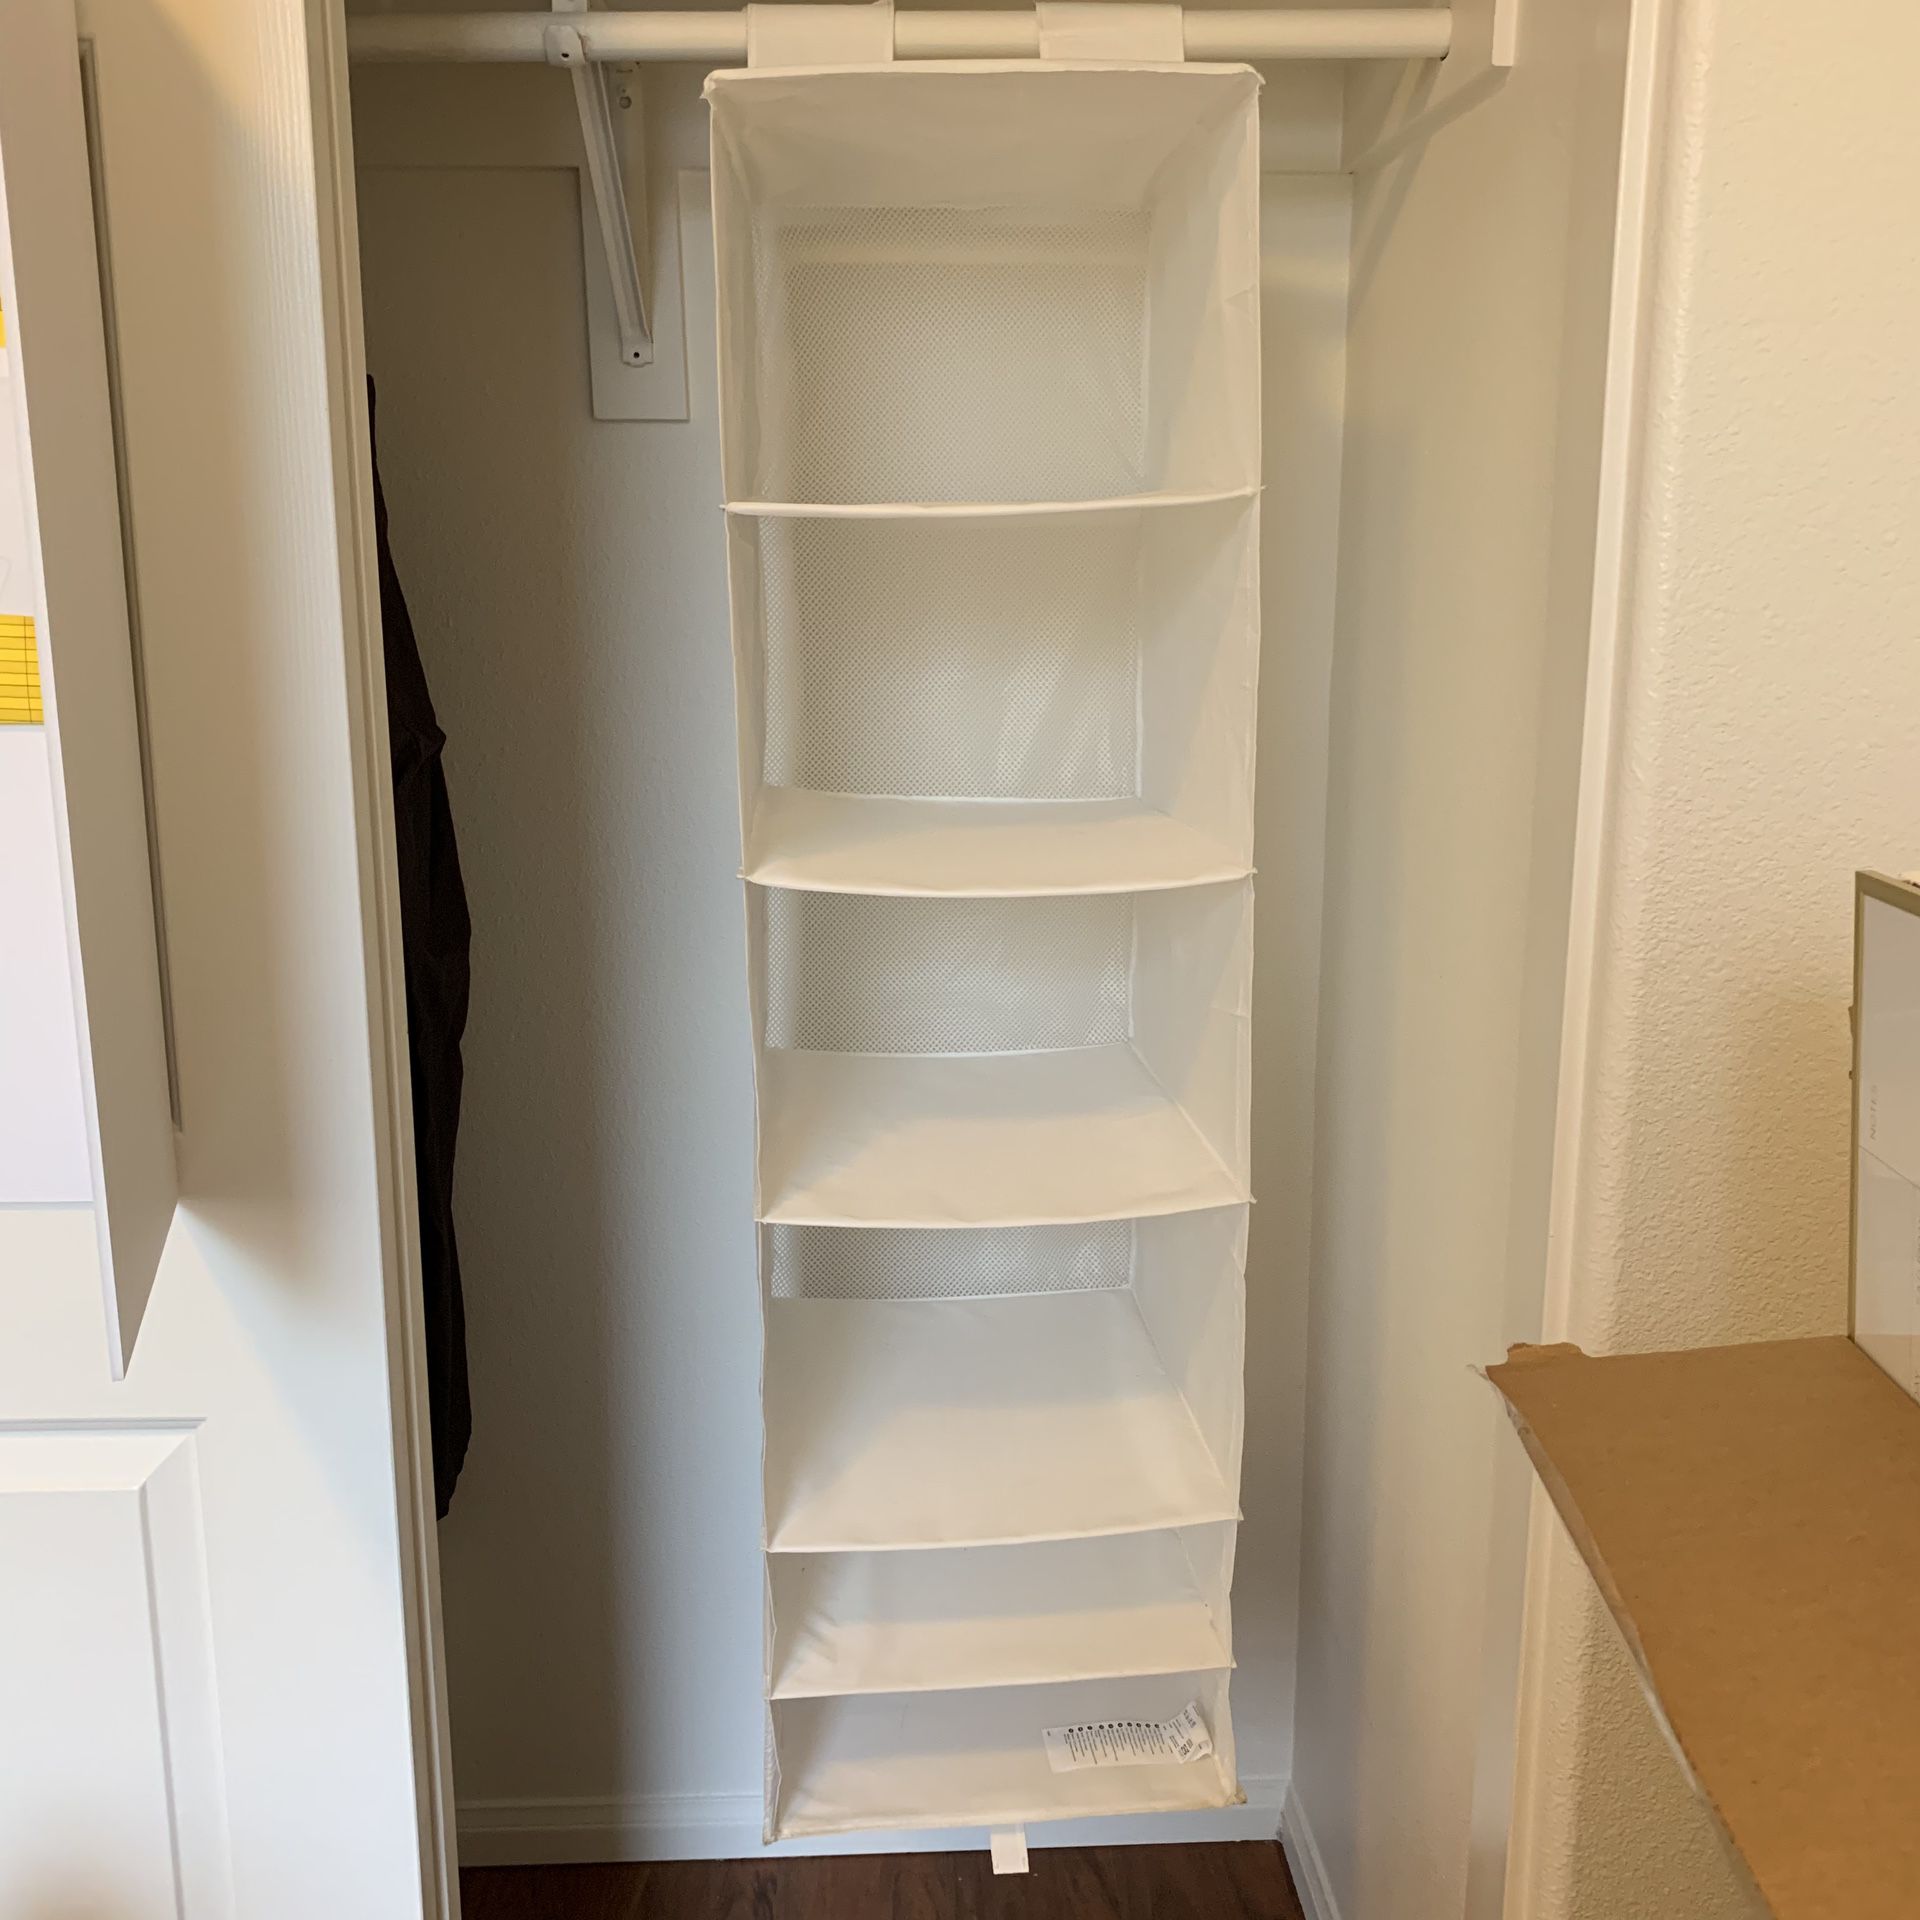 2 Closet organizers - white 6 compartments